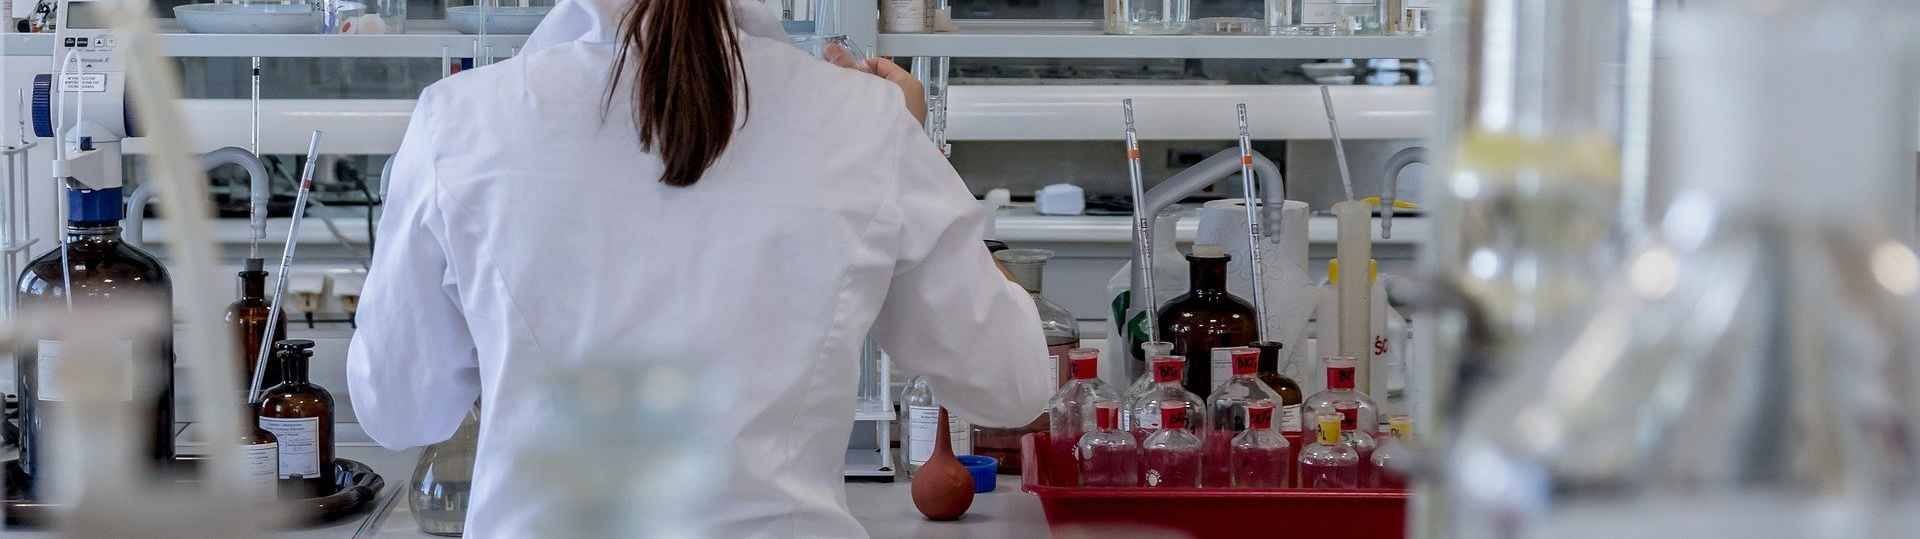 Málaga crea el mayor laboratorio de Investigación Clínica de Andalucía en un hospital público